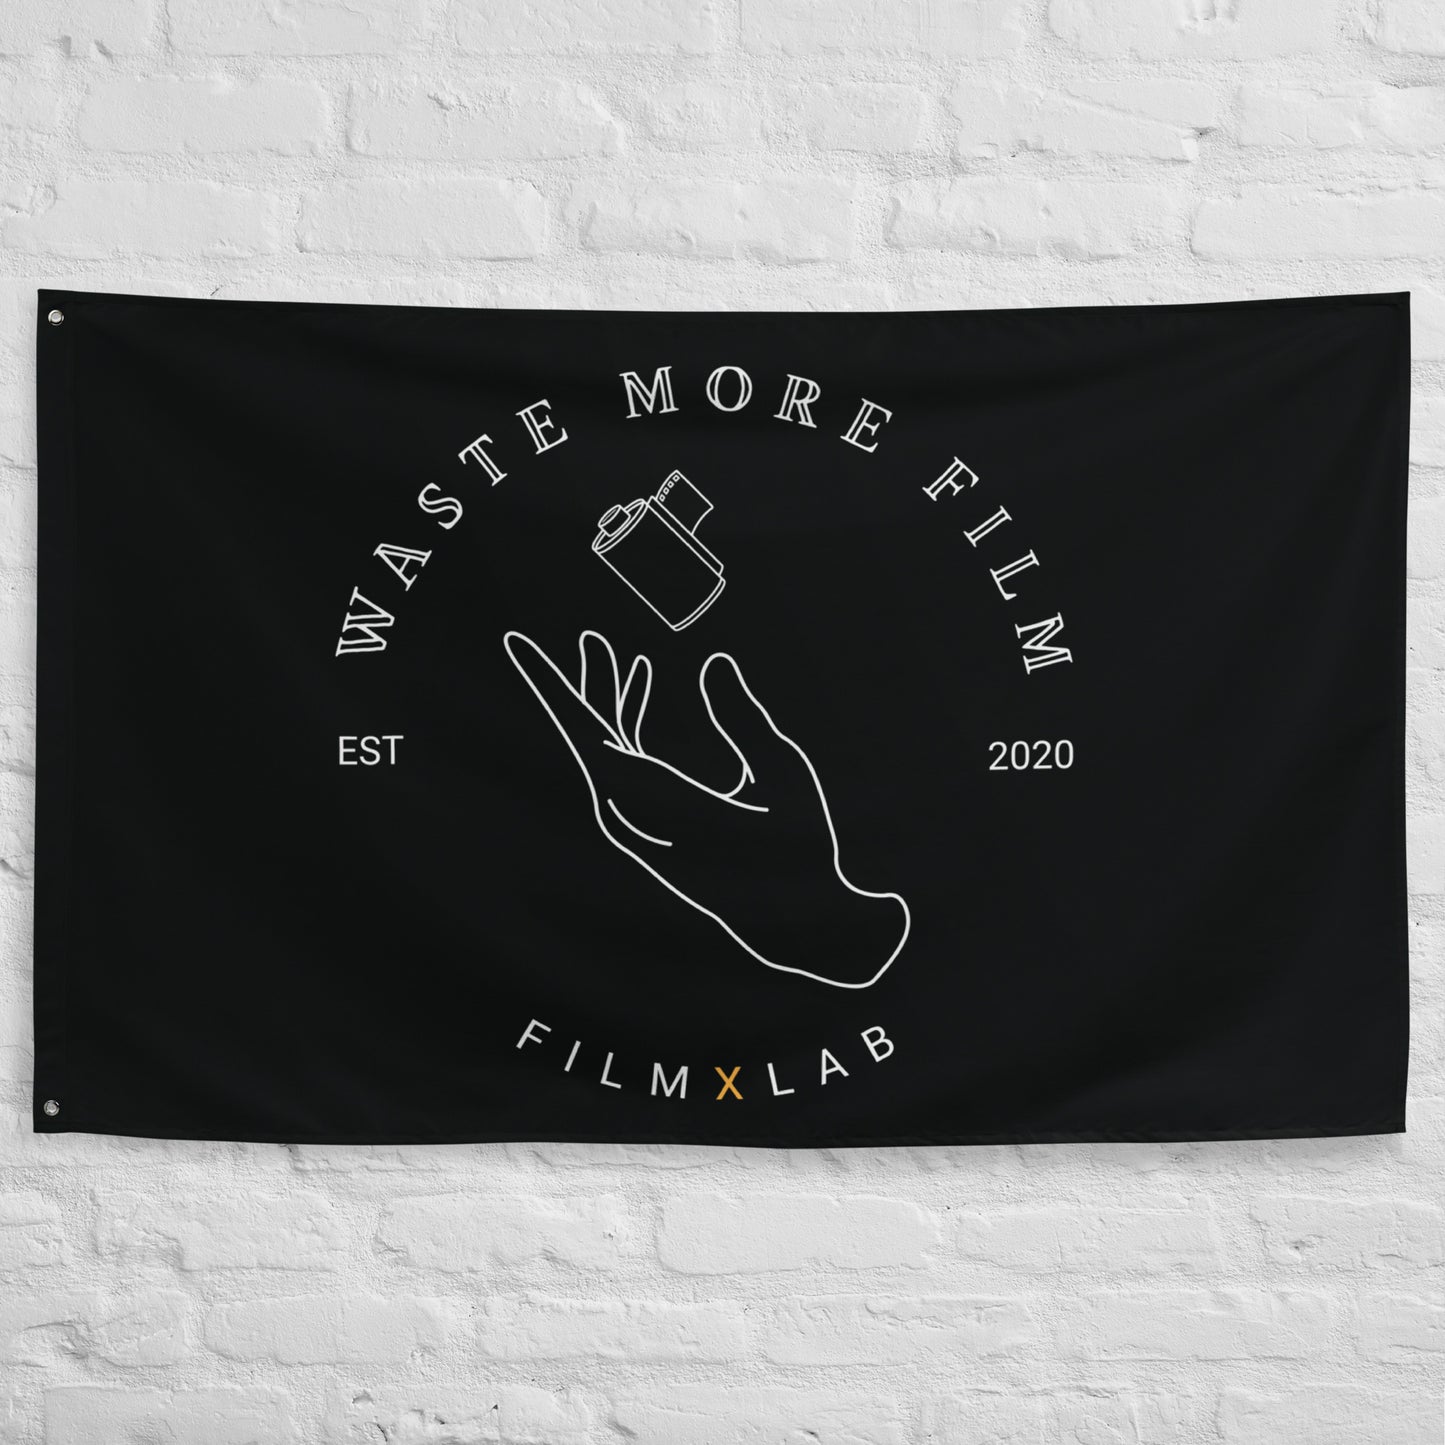 Waste More Film Flag